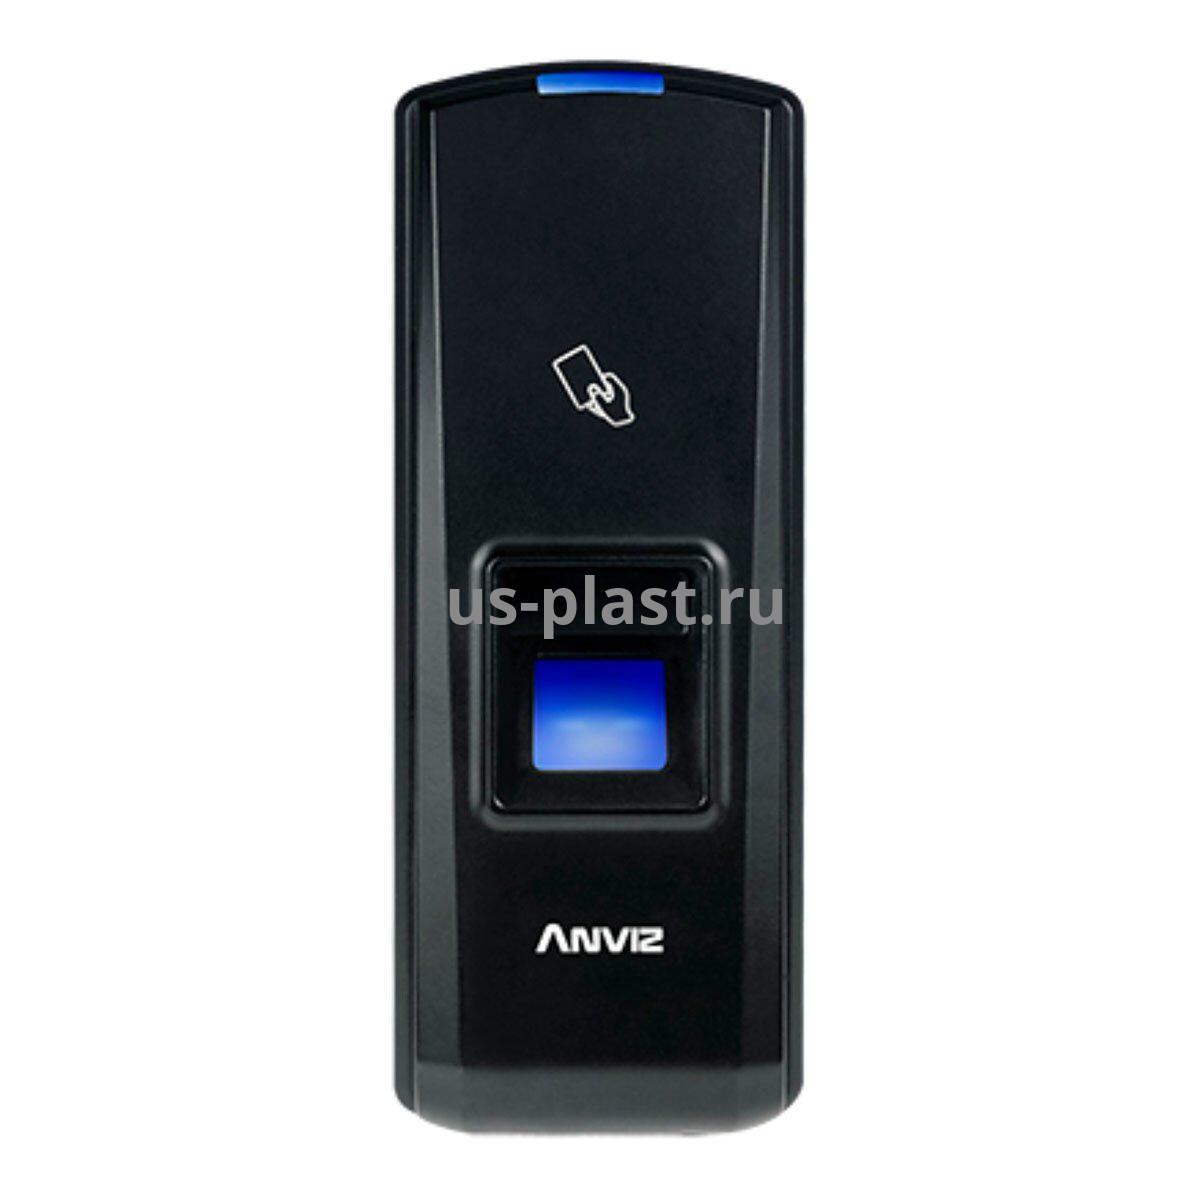 Anviz T5 Pro MF, биометрический терминал контроля доступа